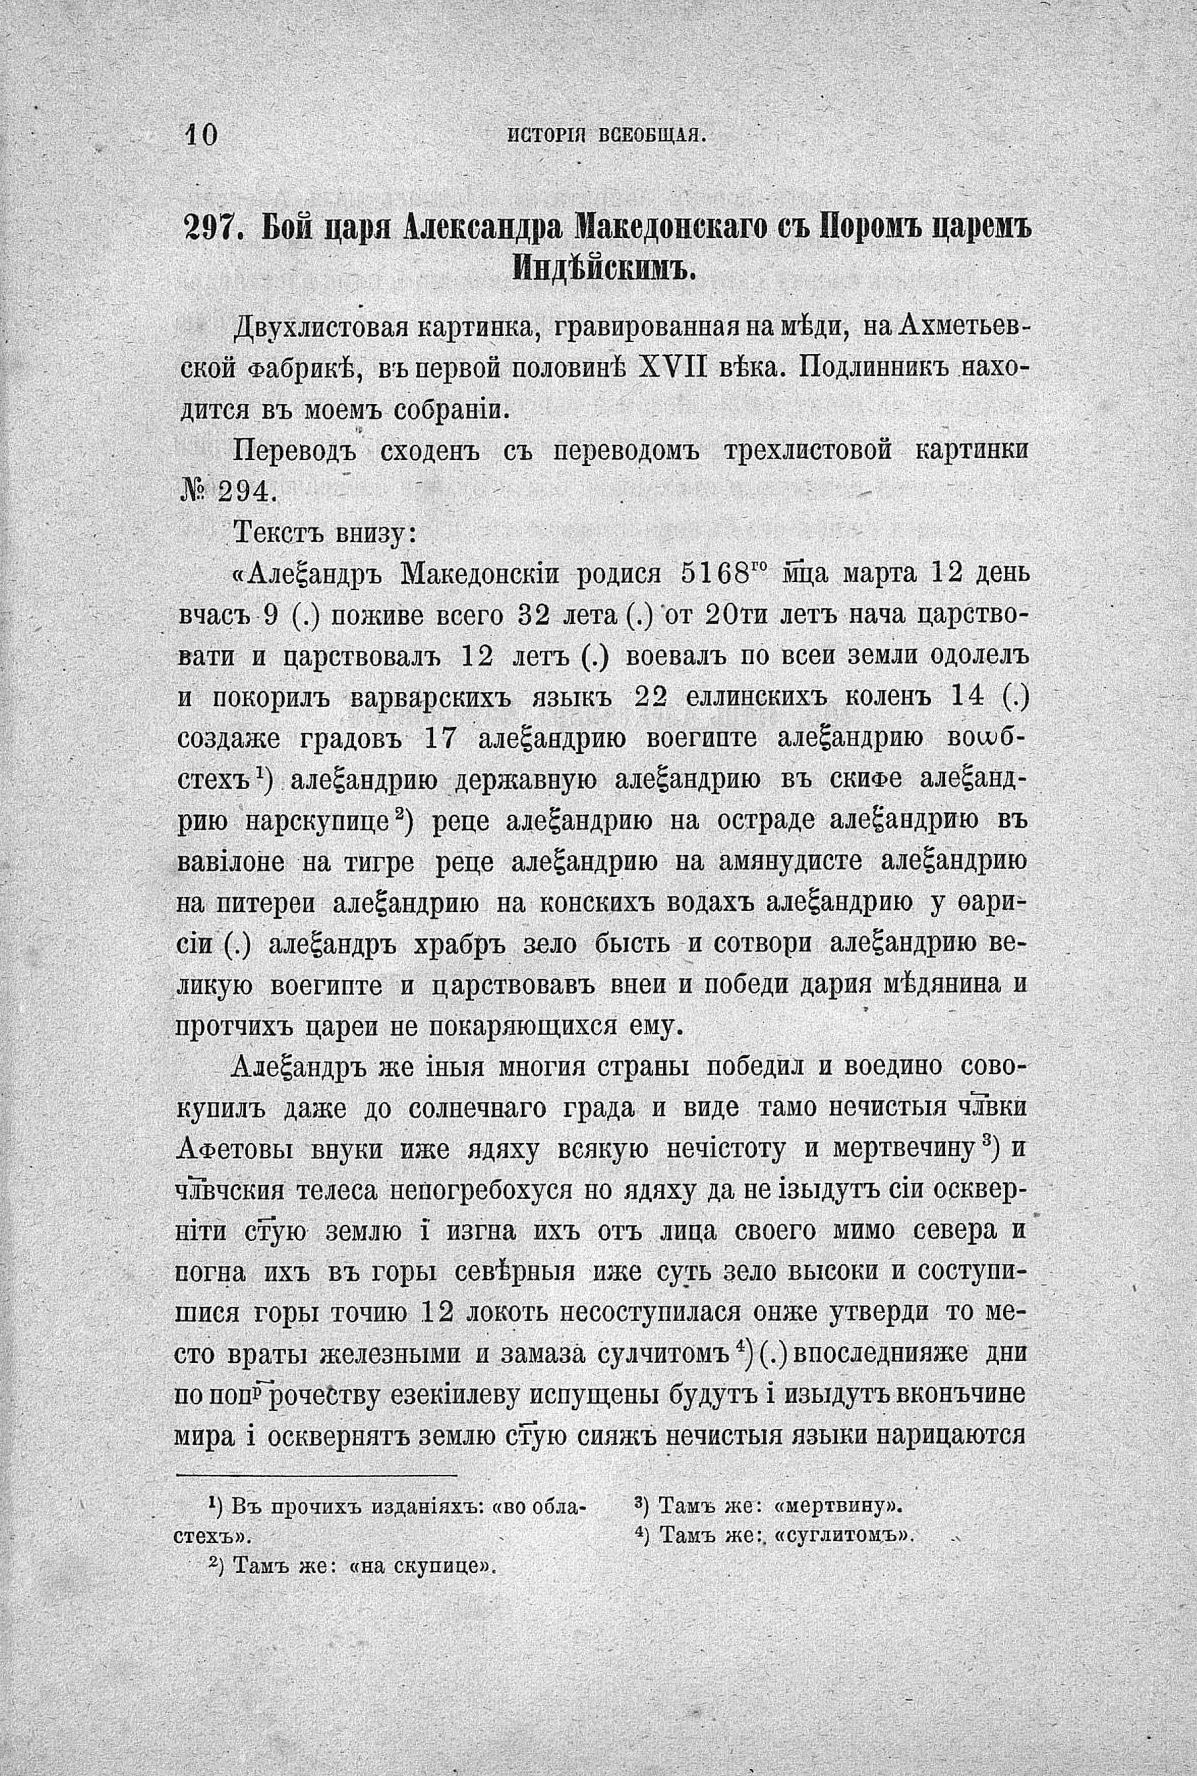 Русские народные картинки : Книги I—V / Собрал и описал Д. Ровинский. — Санктпетербург: Типография Императорской Академии Наук, 1881